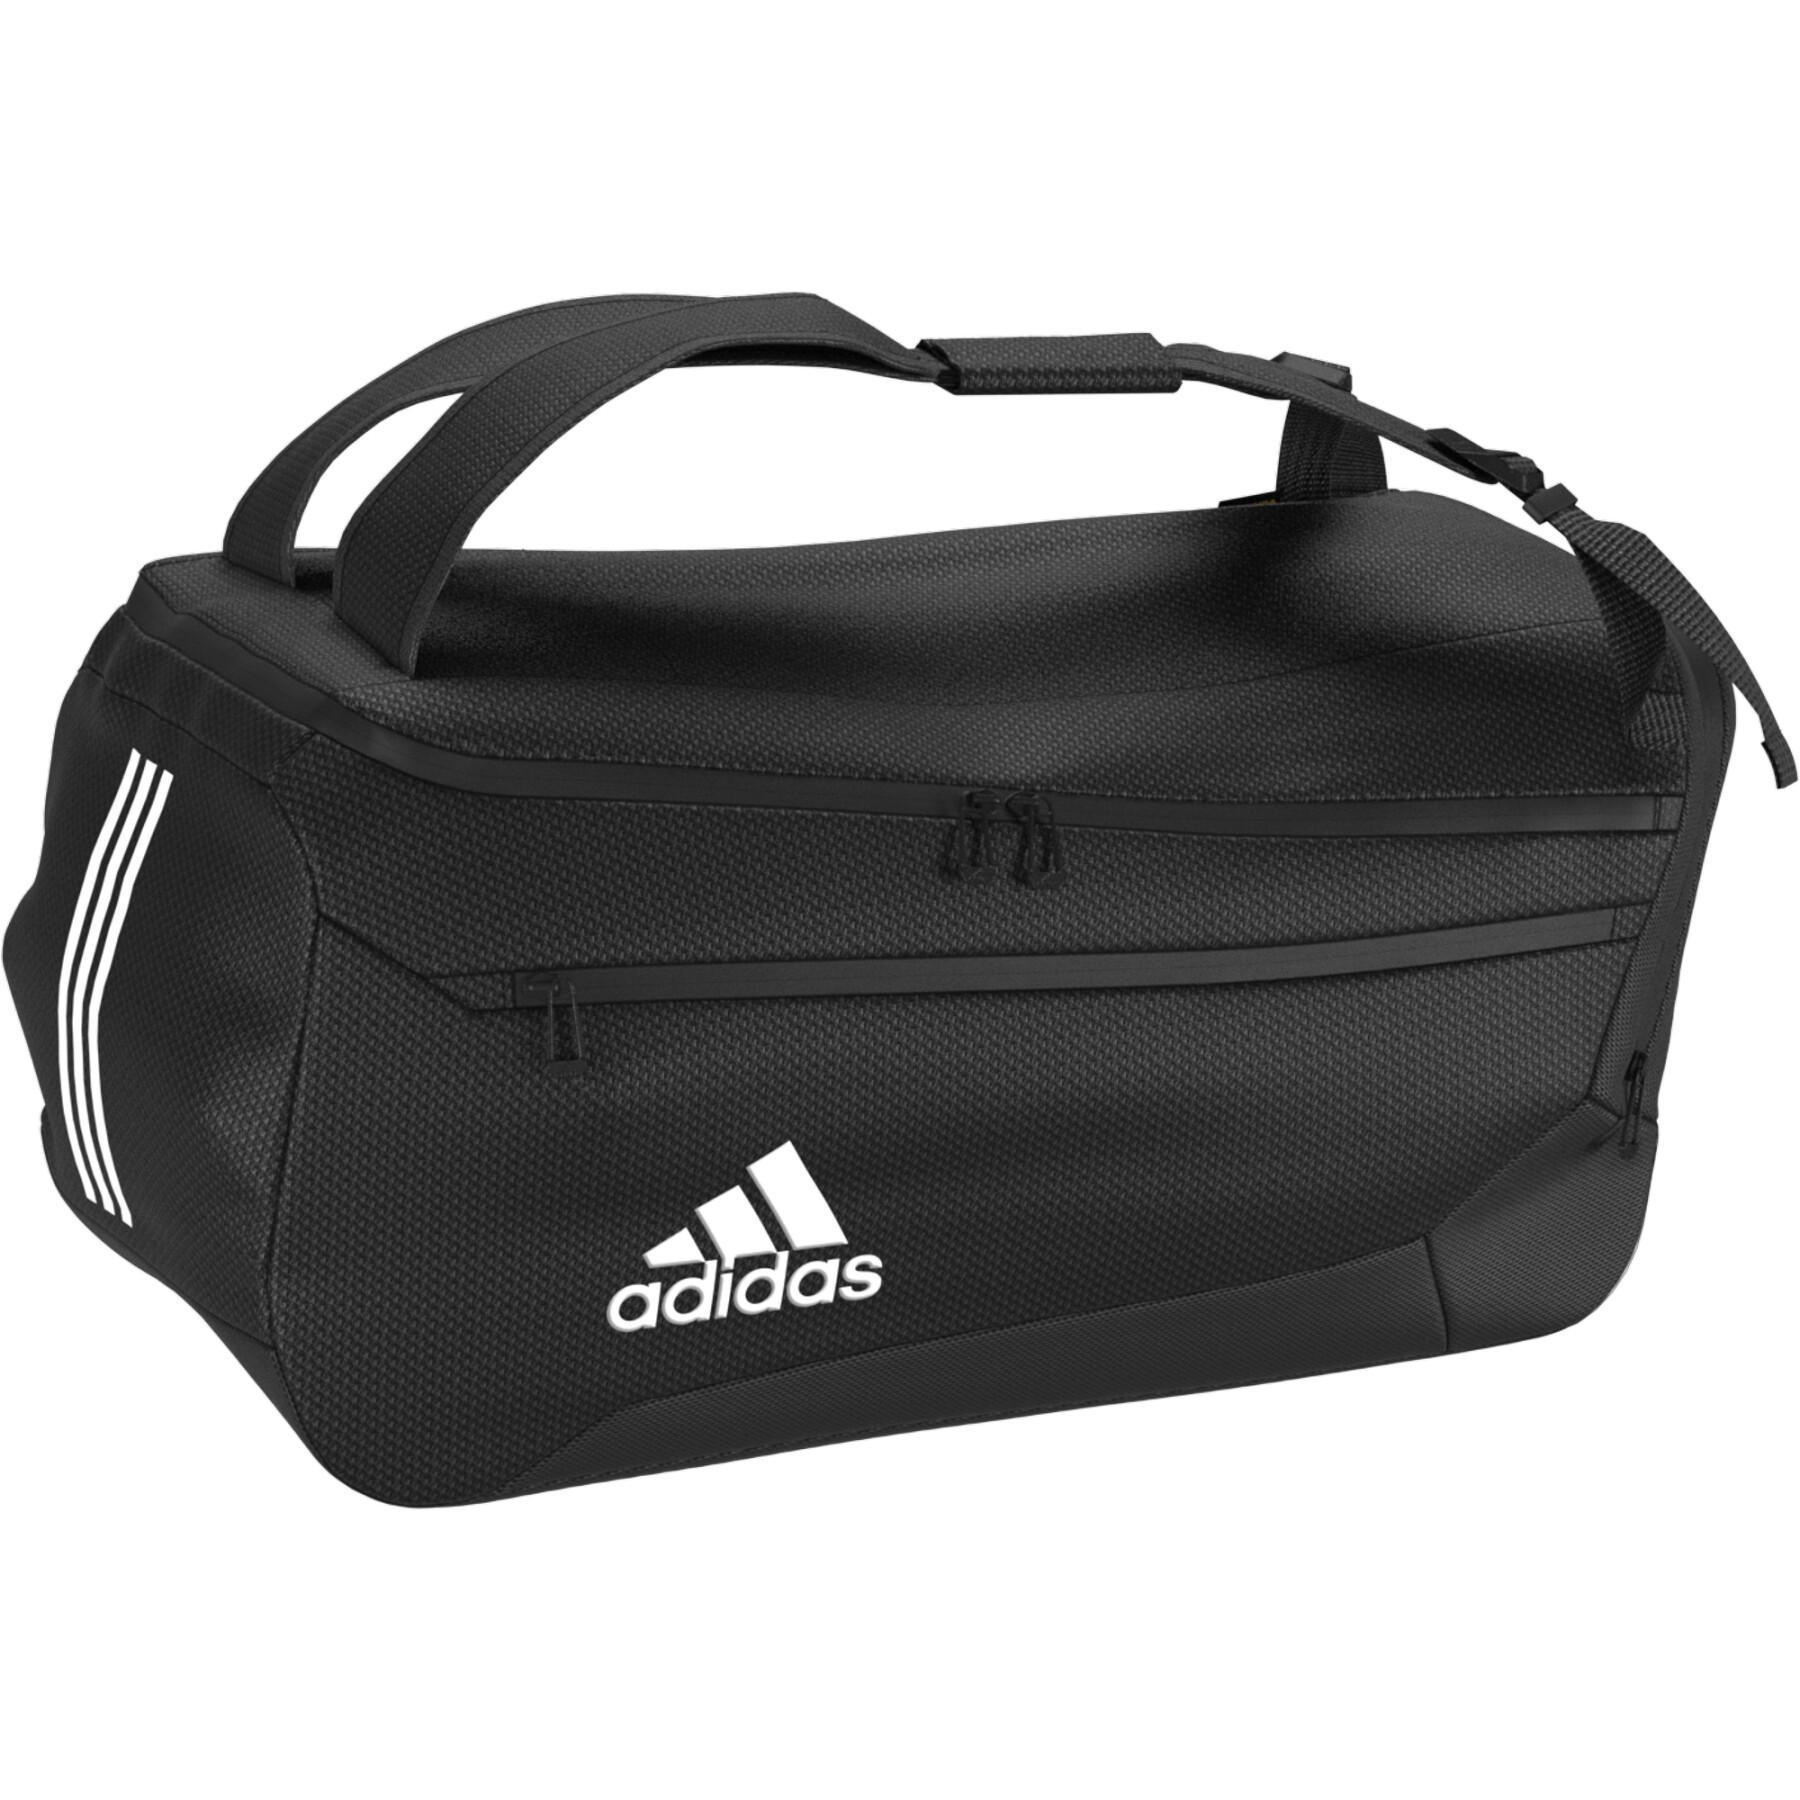 Sports bag adidas Ep/Syst. Duffel 50l